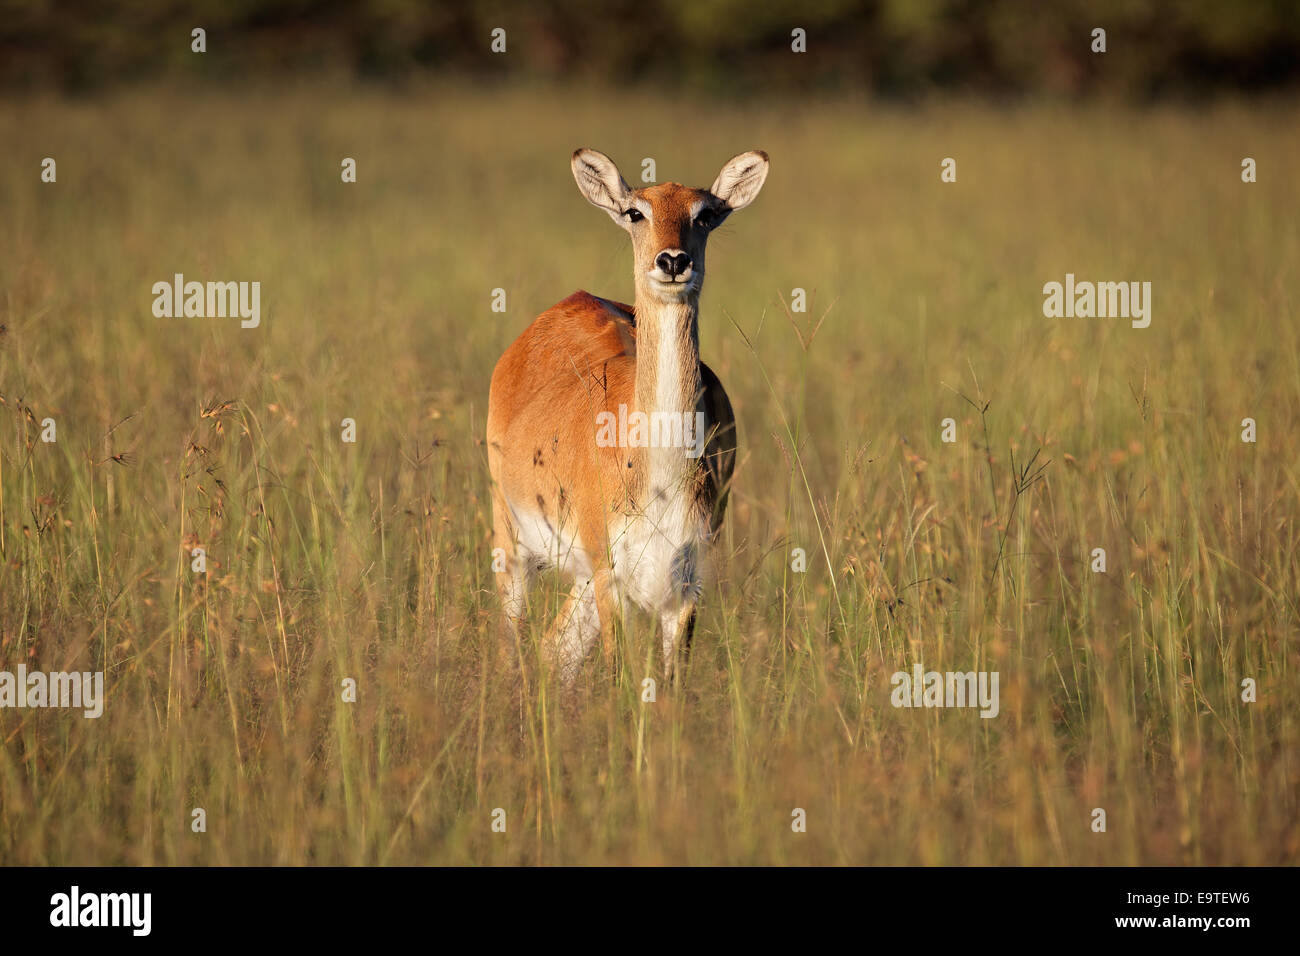 Les cobes lechwes rouges Kobus leche (antilope) dans l'herbe haute, l'Afrique australe Banque D'Images